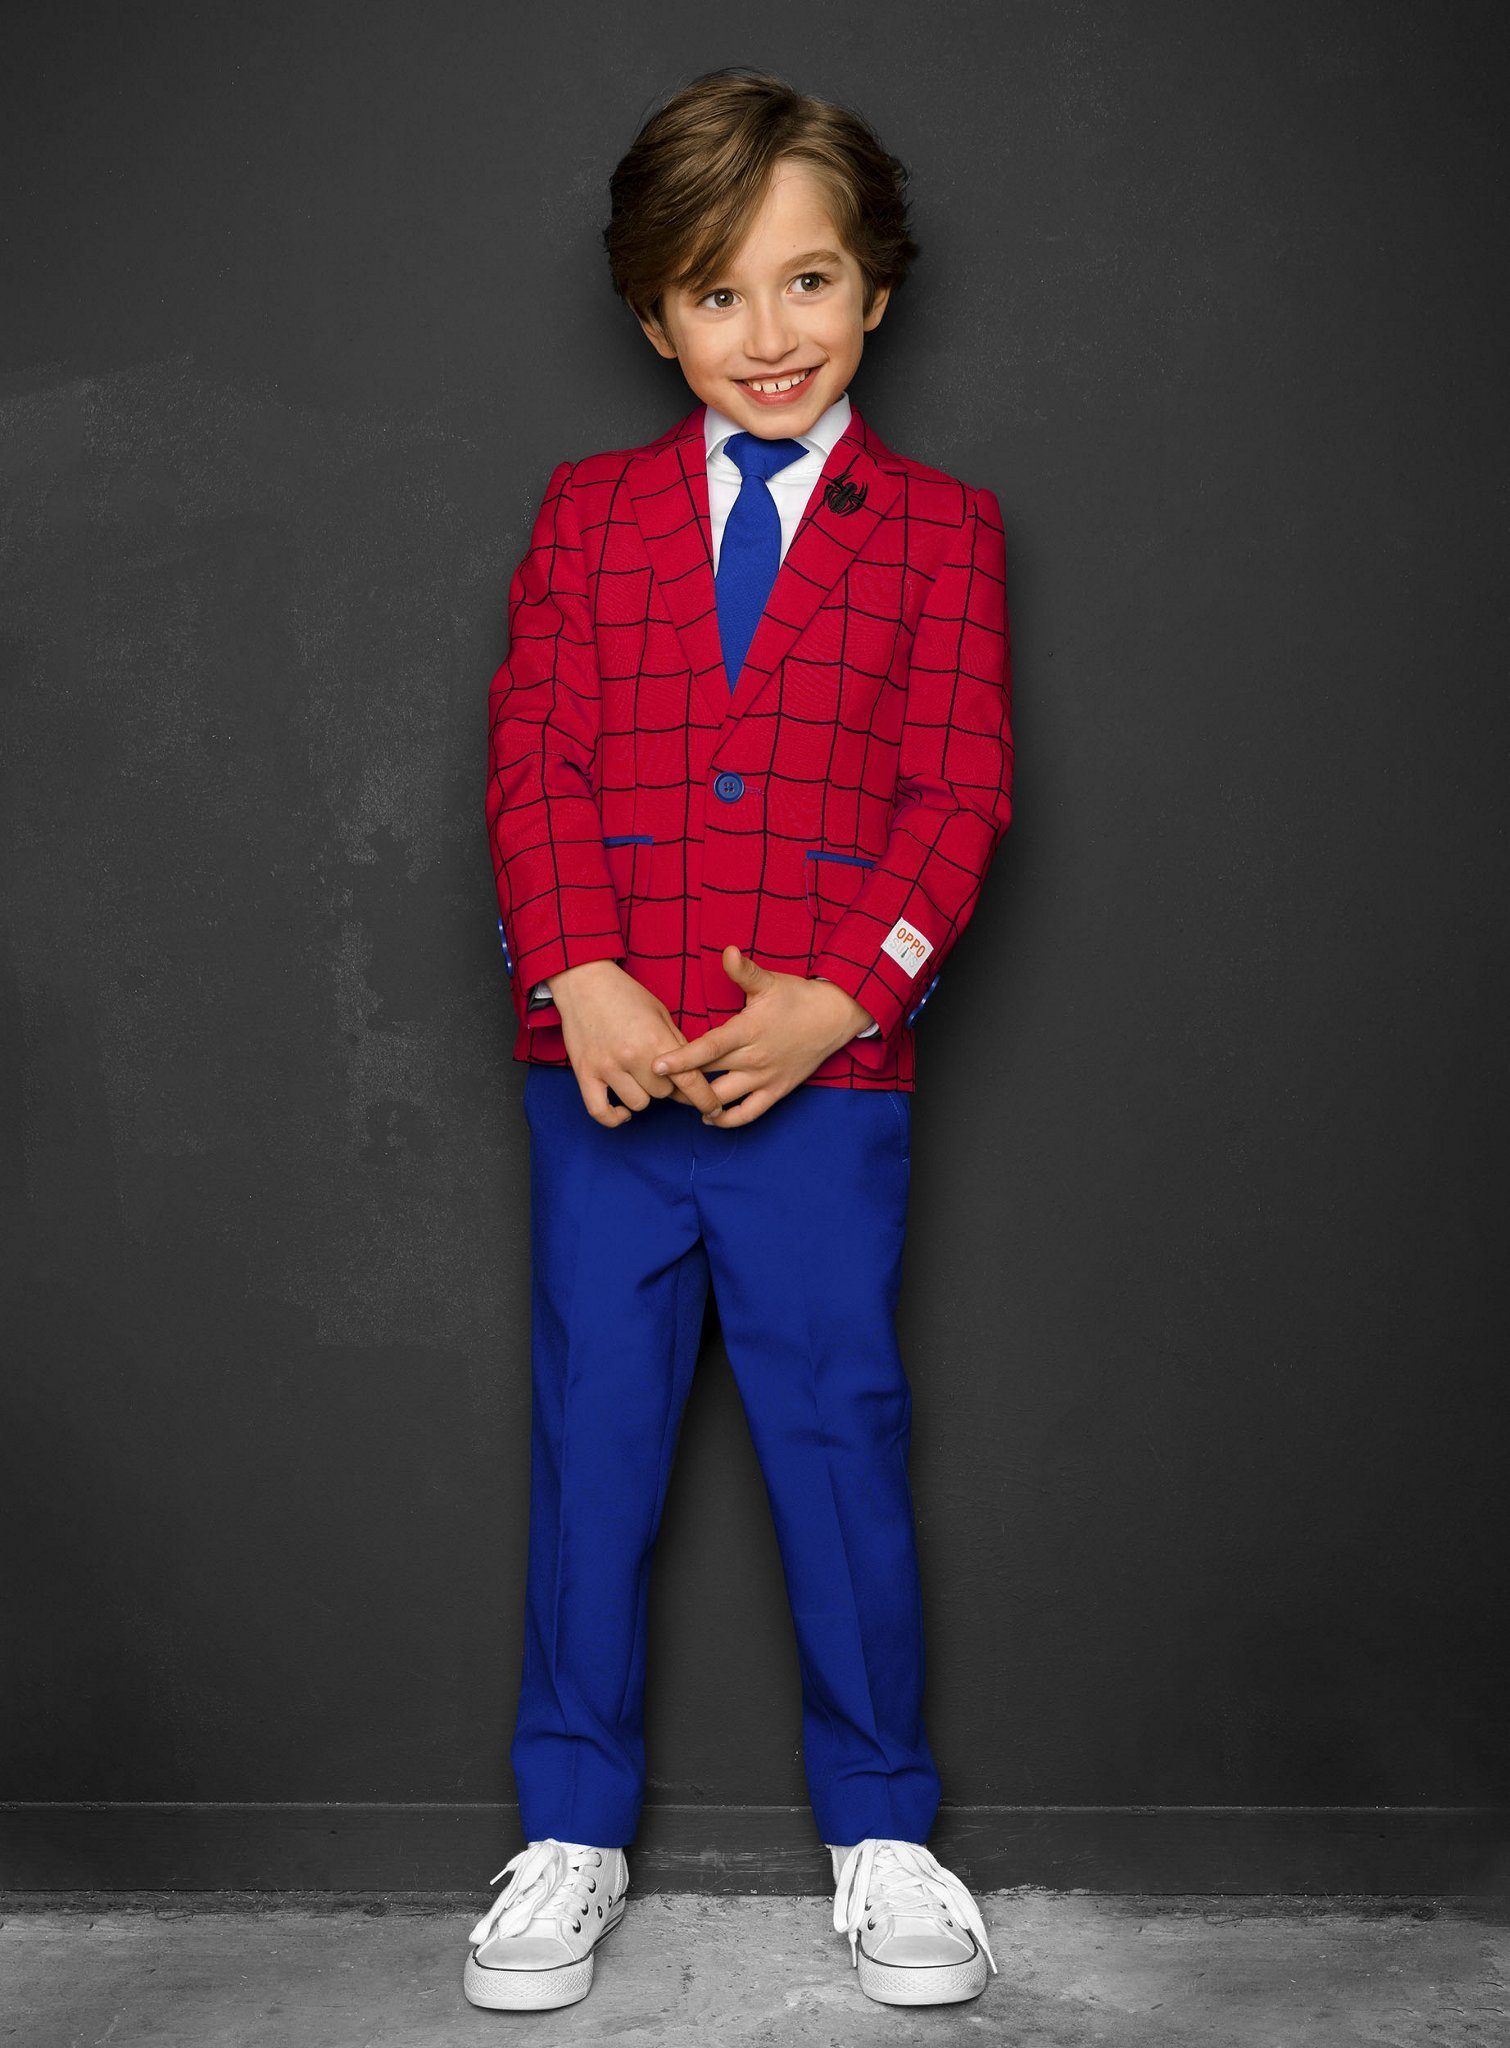 Opposuits Partyanzug Boys Spider-Man, Cooler Anzug für coole Kids